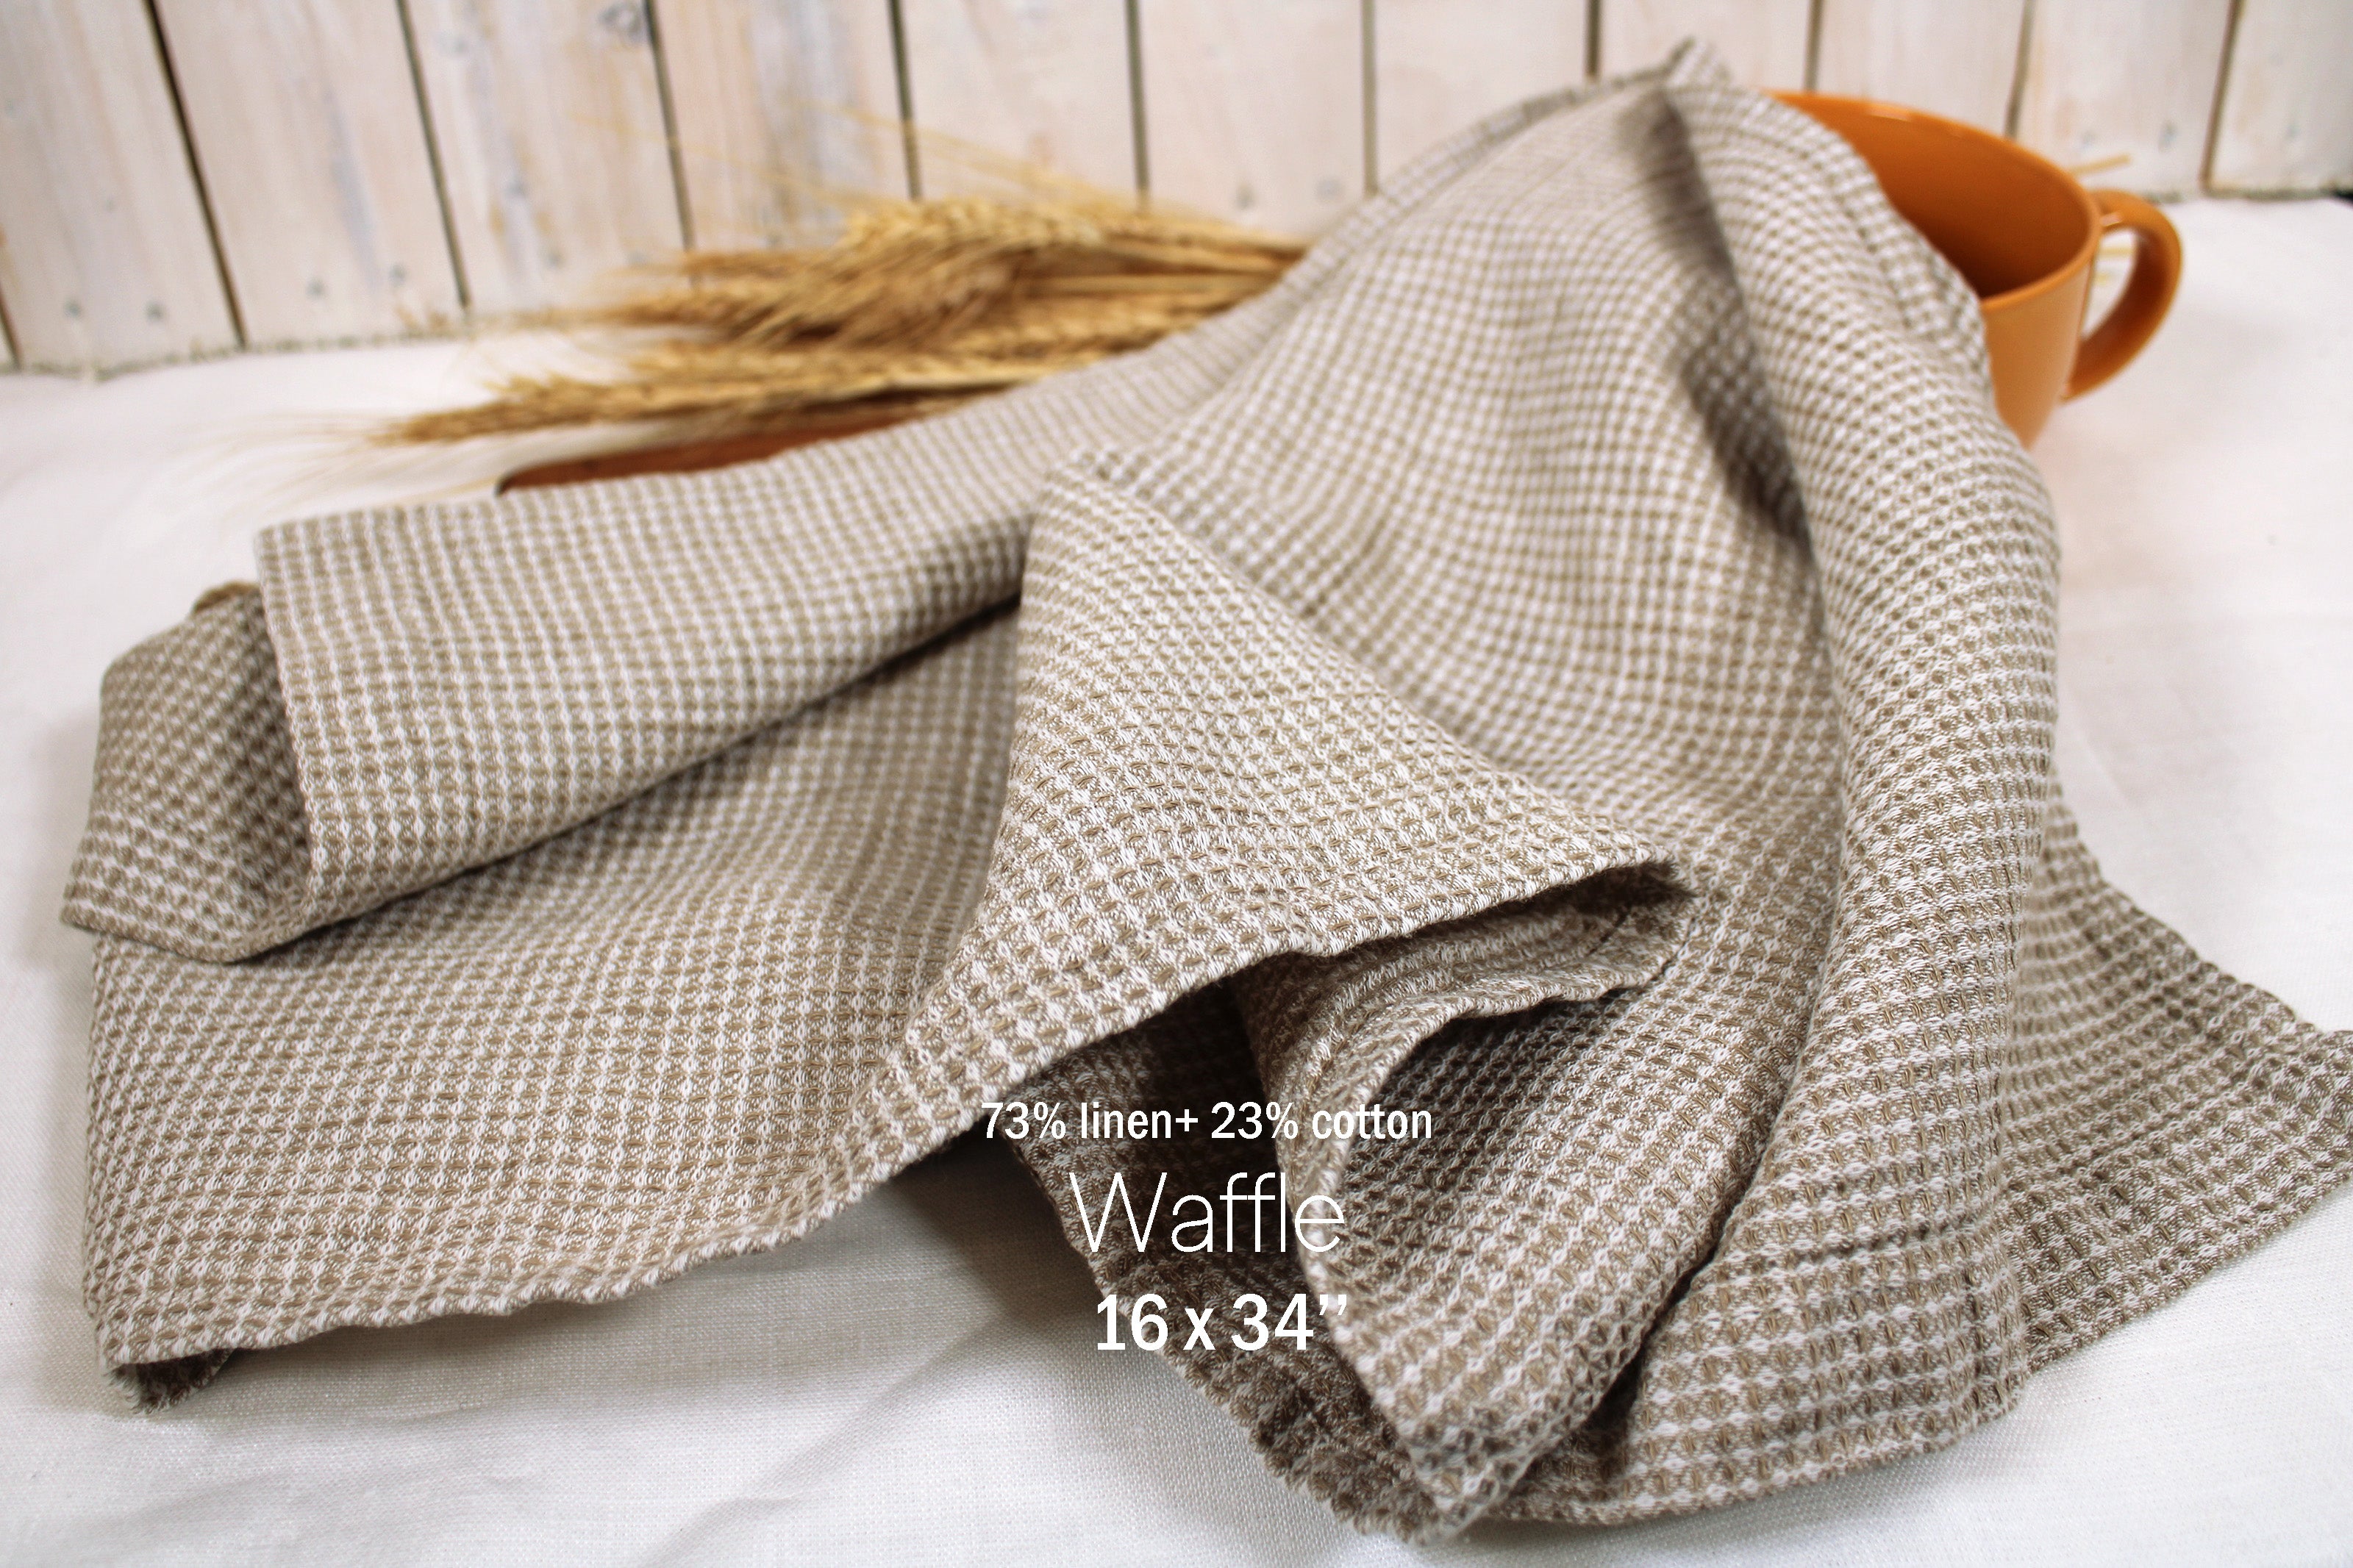 Linen towels / Waffle linen towels